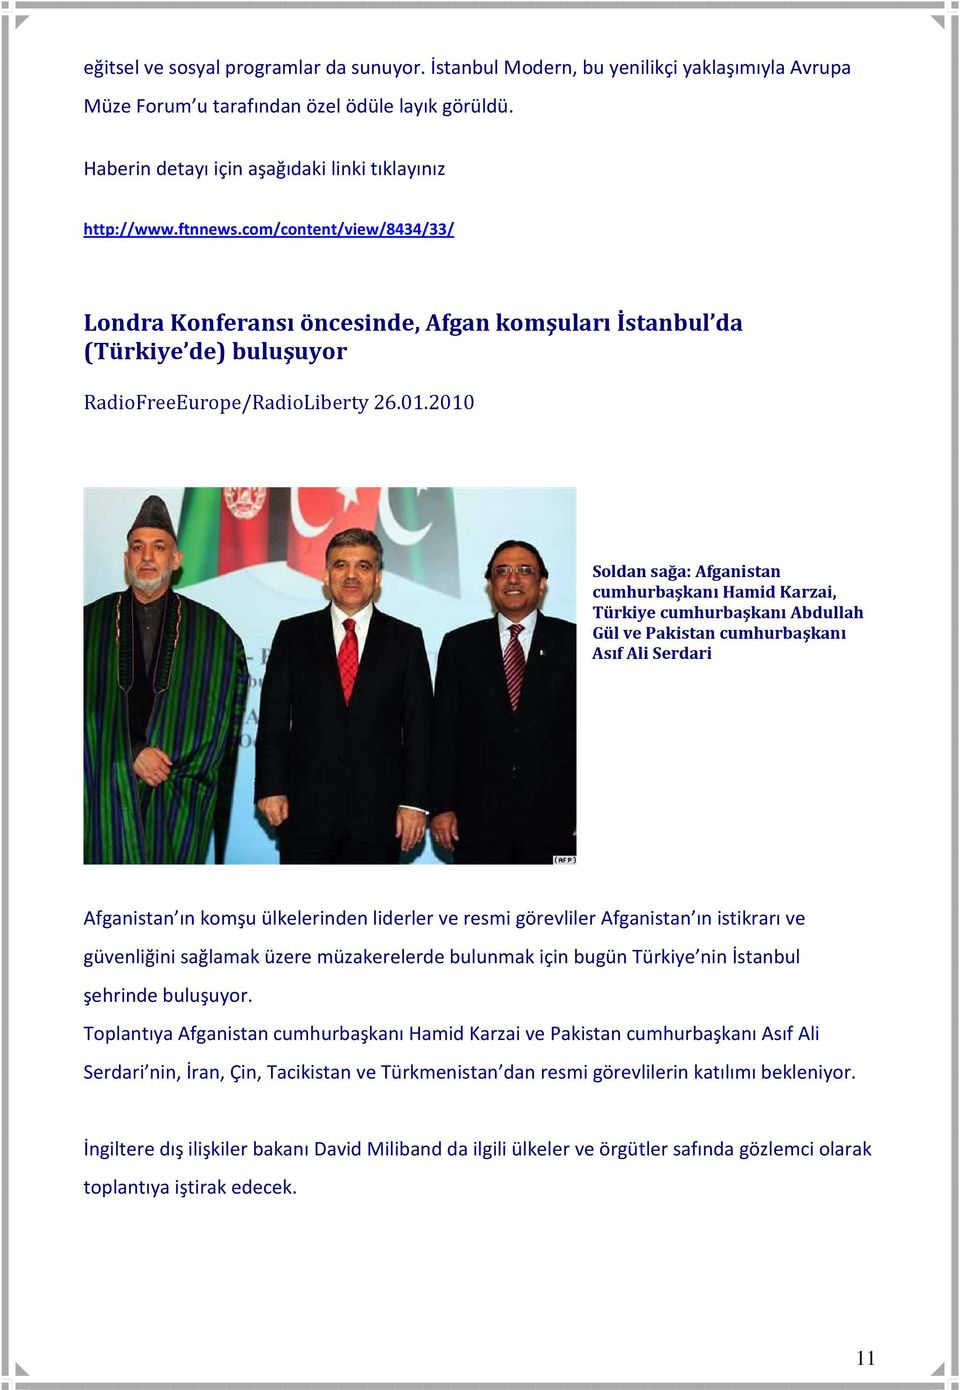 2010 Soldan sağa: Afganistan cumhurbaşkanı Hamid Karzai, Türkiye cumhurbaşkanı Abdullah Gül ve Pakistan cumhurbaşkanı Asıf Ali Serdari Afganistan ın komşu ülkelerinden liderler ve resmi görevliler